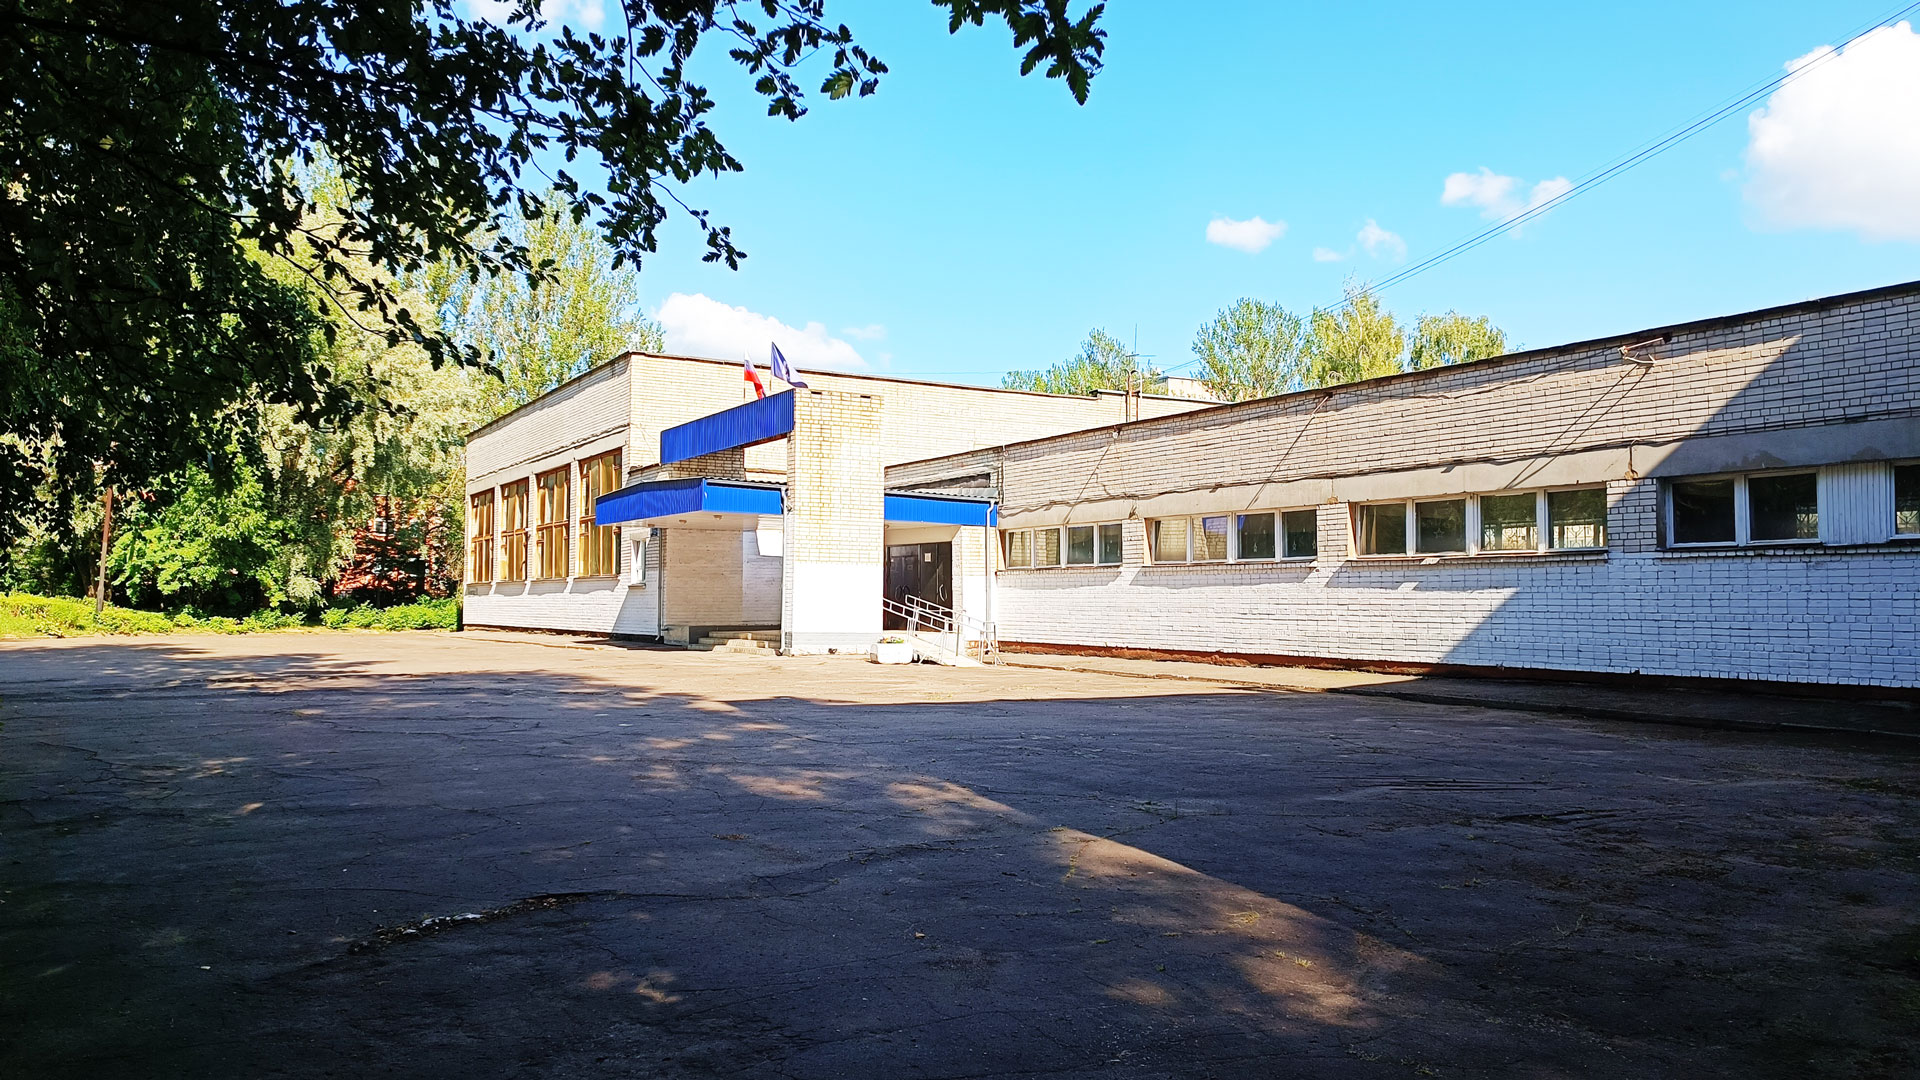 Гимназия 1 Ярославль: общий вид территории и здания.